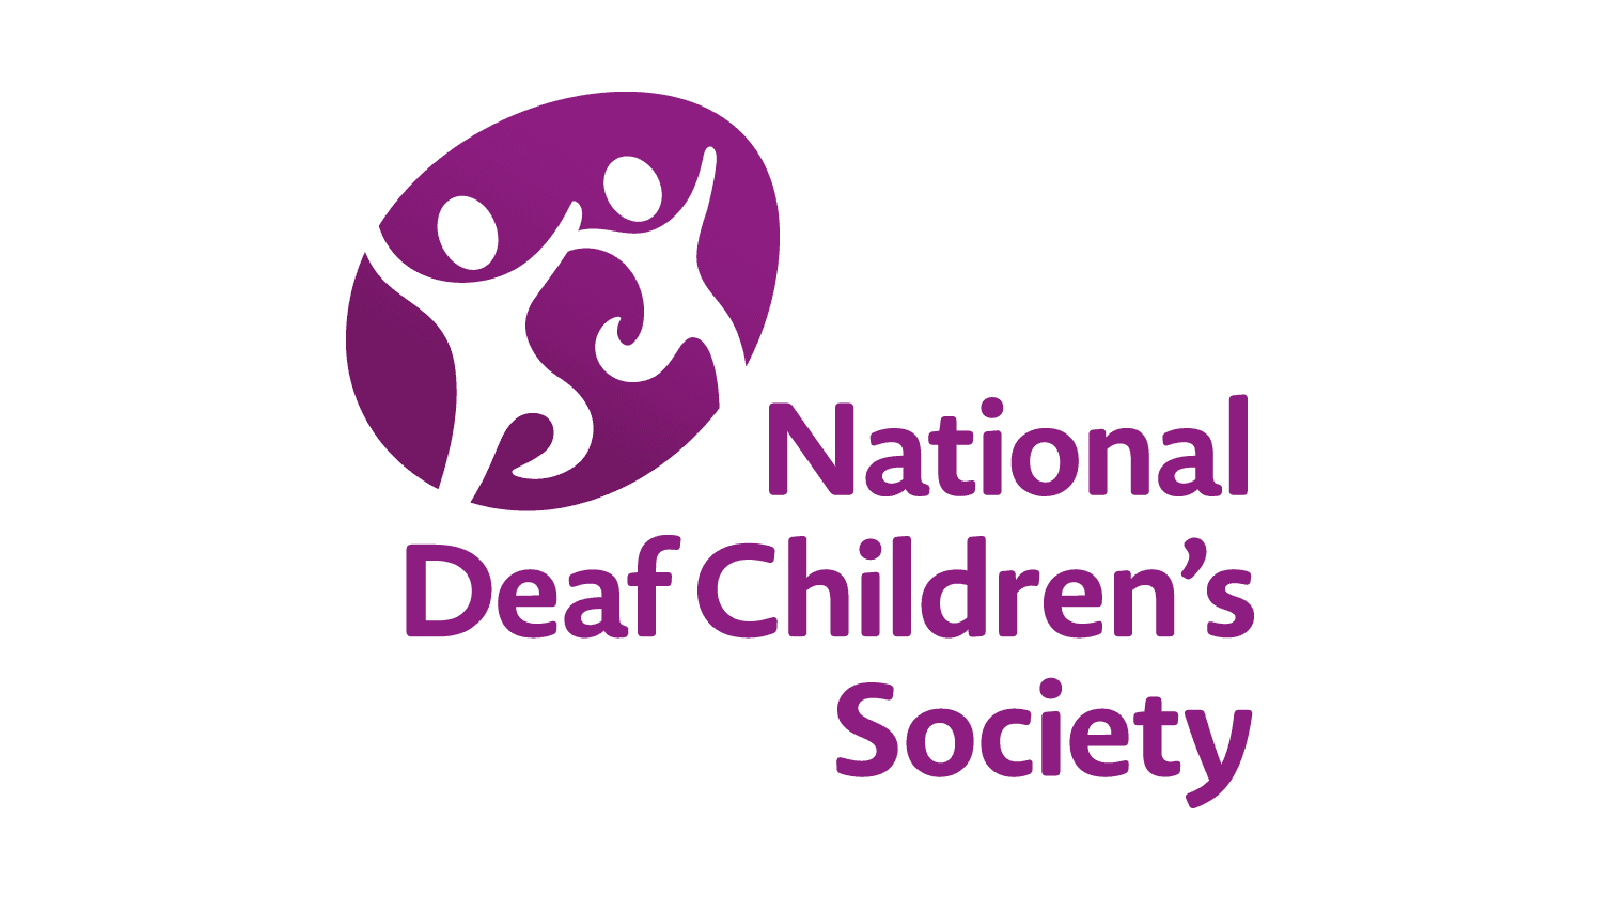 National deaf children's society logo